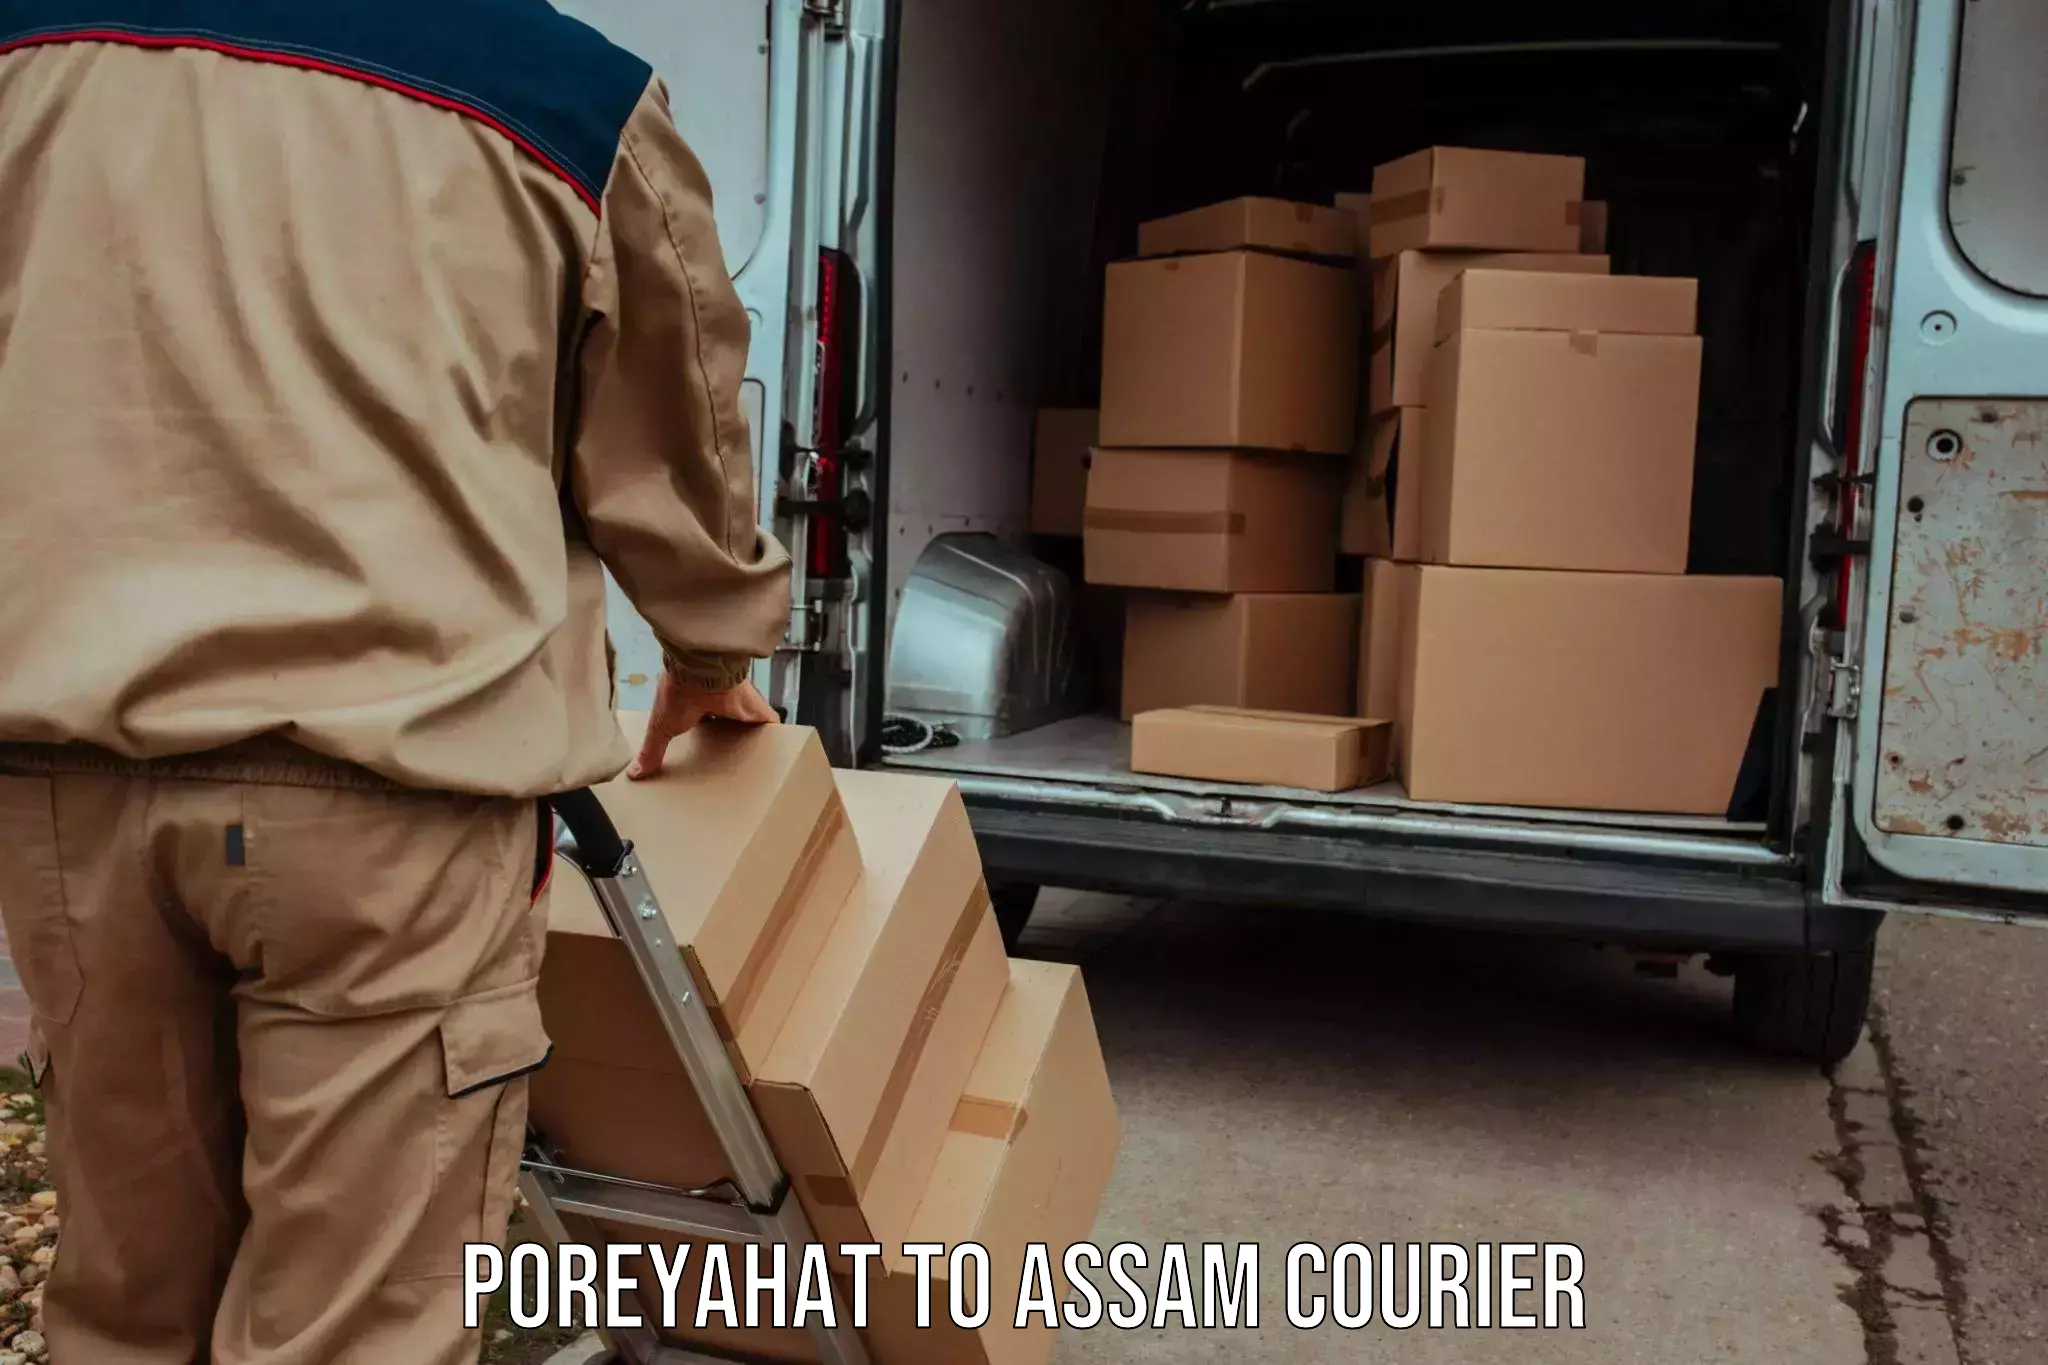 Courier service comparison Poreyahat to Jorabat